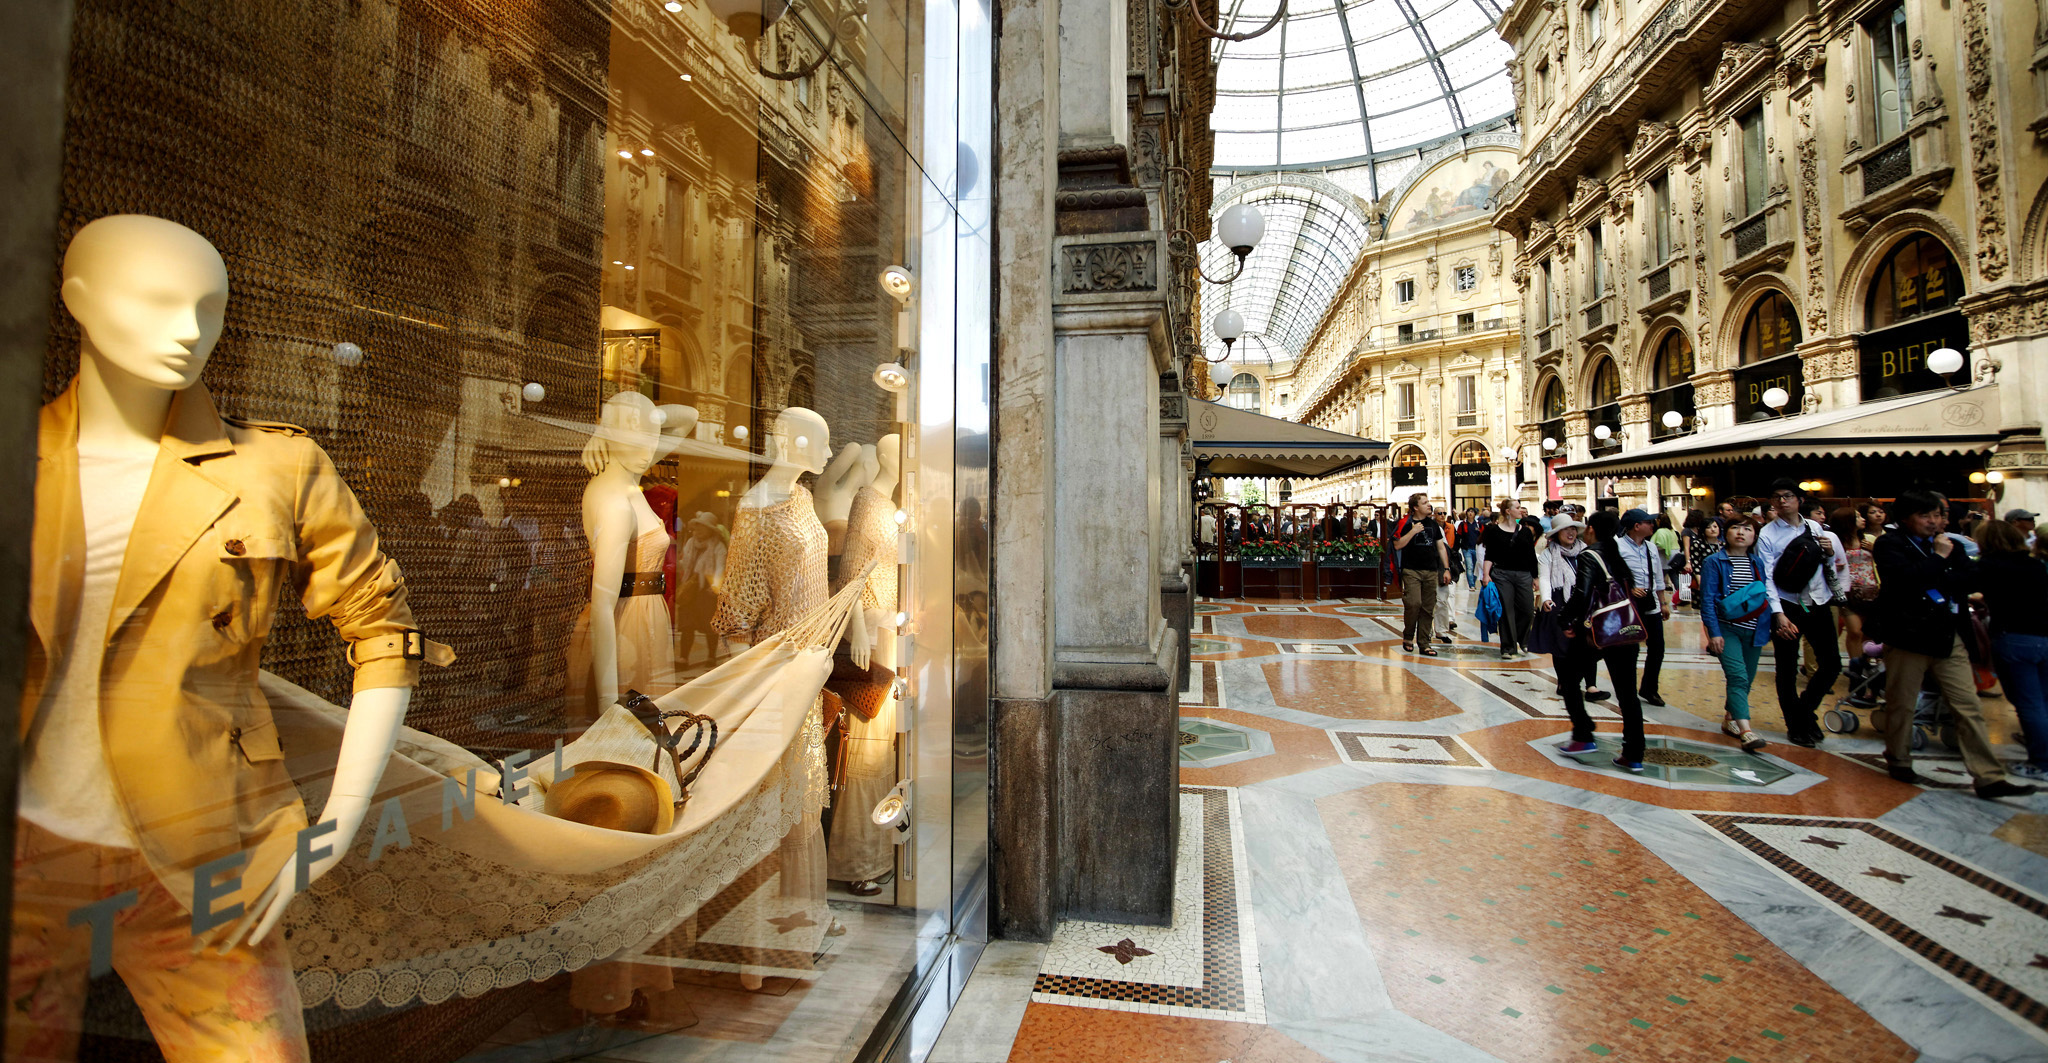 Galleria Vittorio Emanuele II is Milans unique spectacular shopping arcade - photo 6